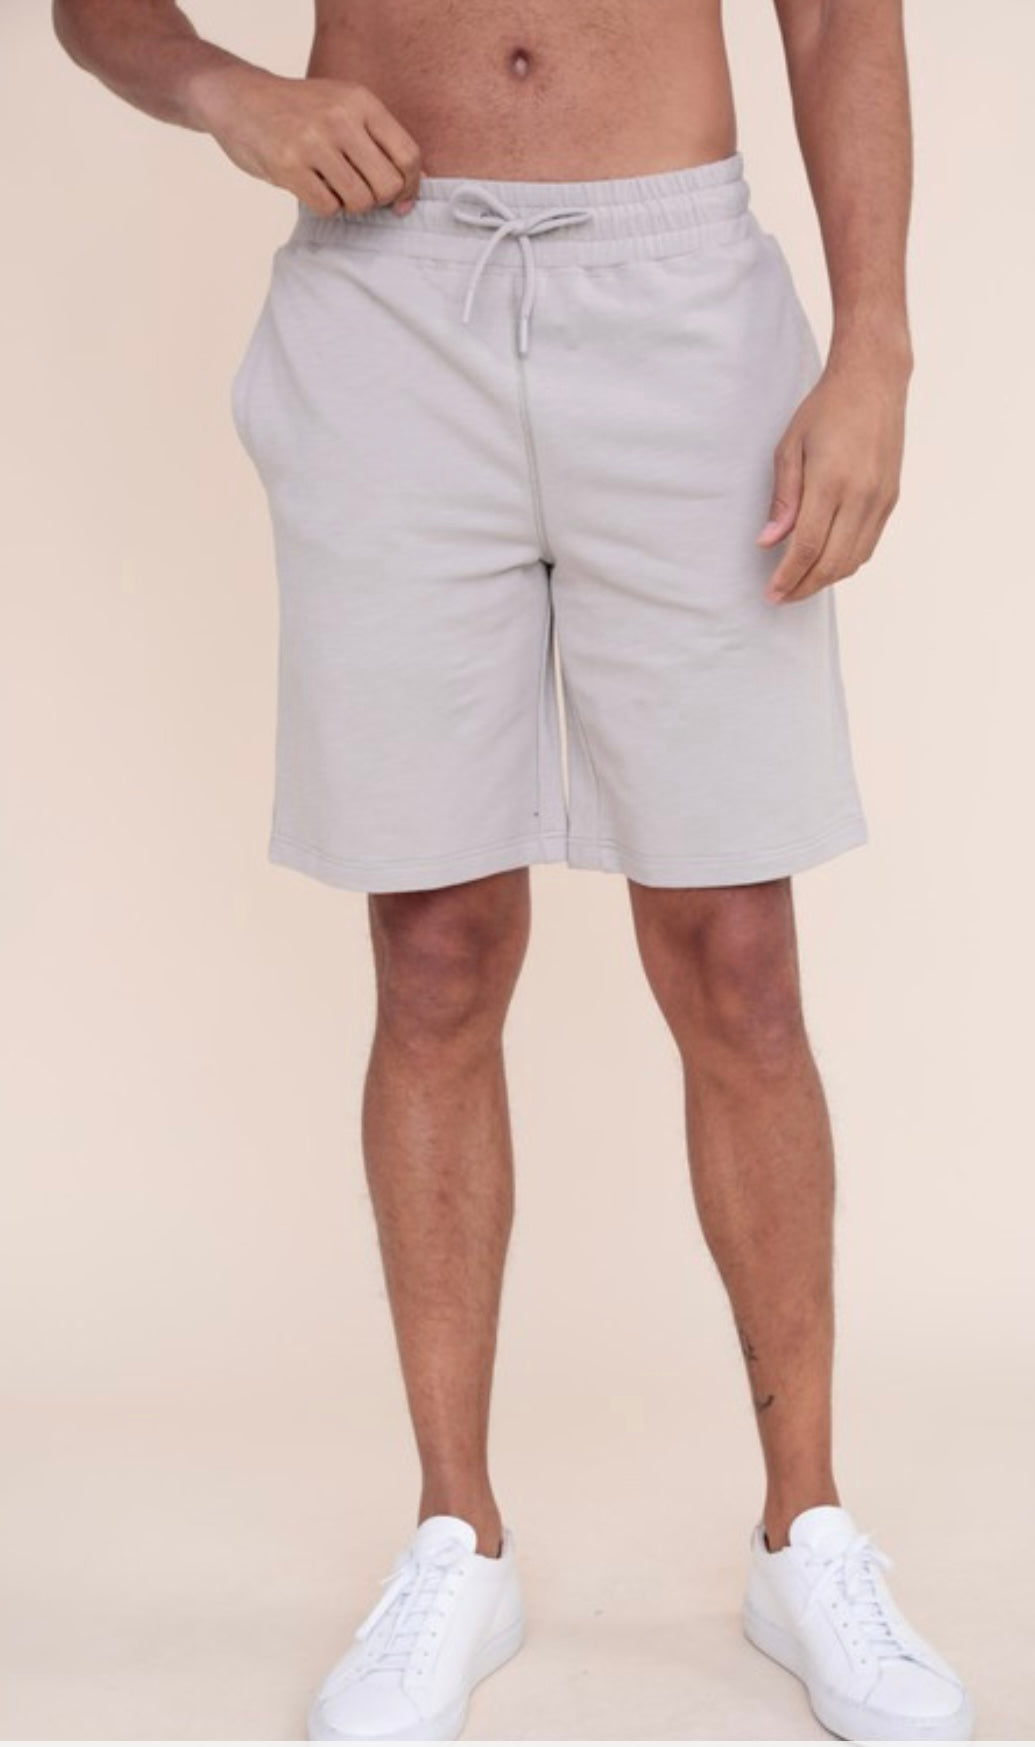 black men's shorts